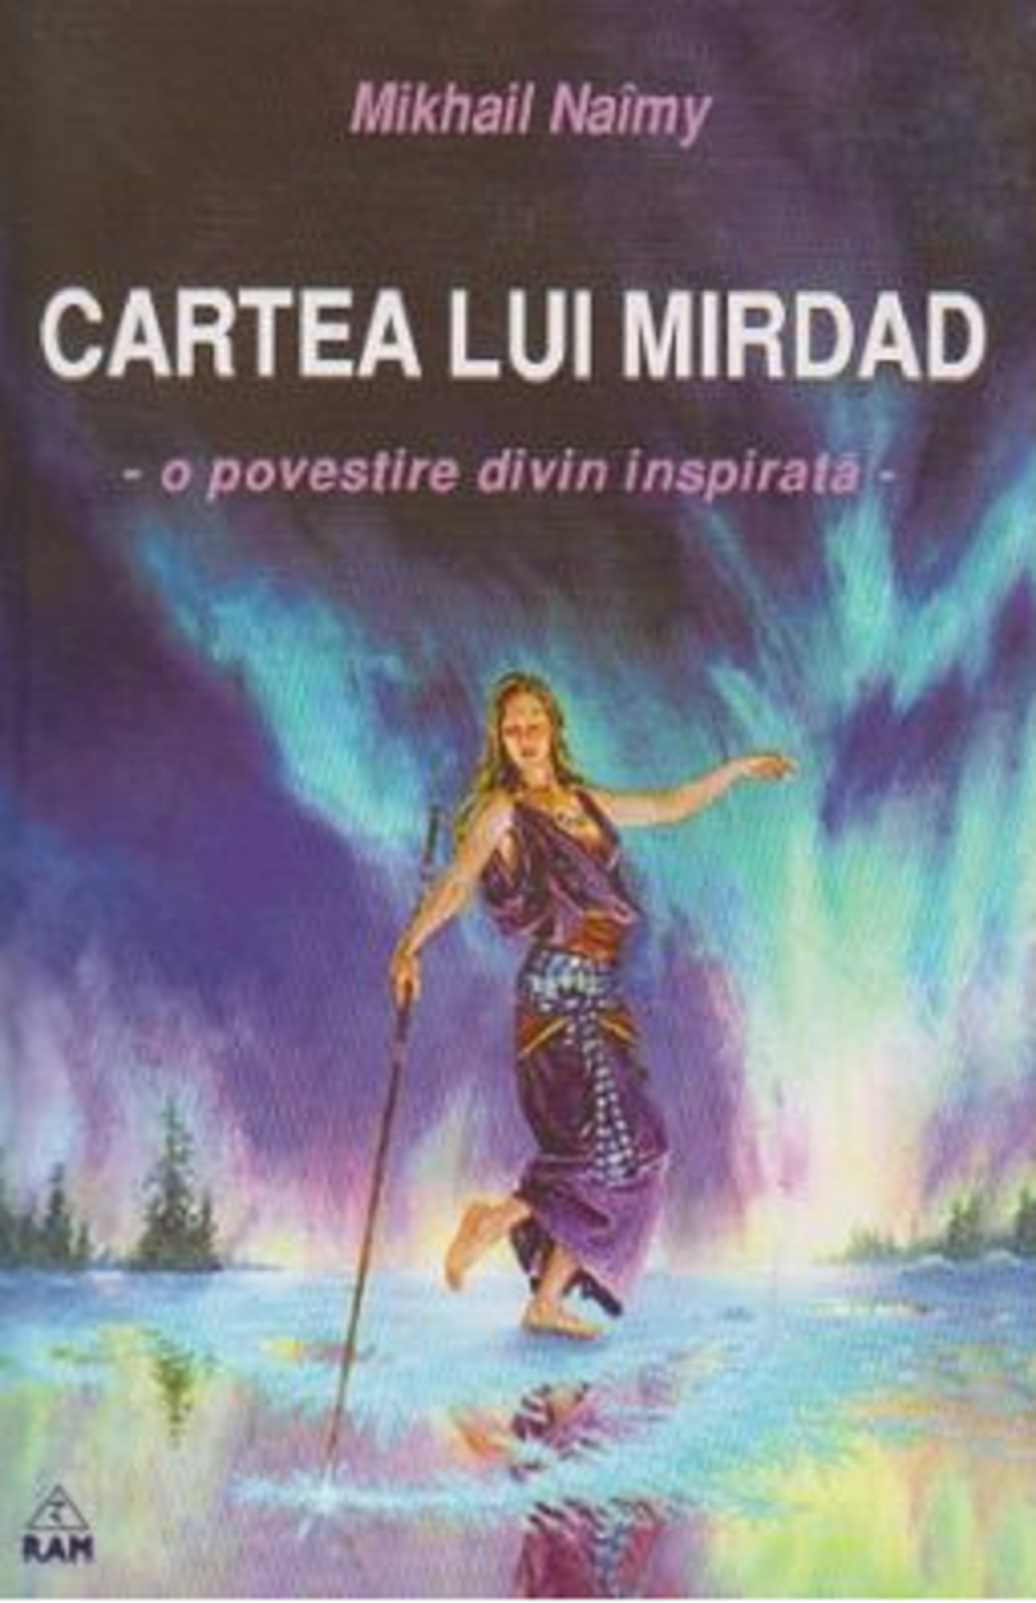 Cartea lui Mirdad